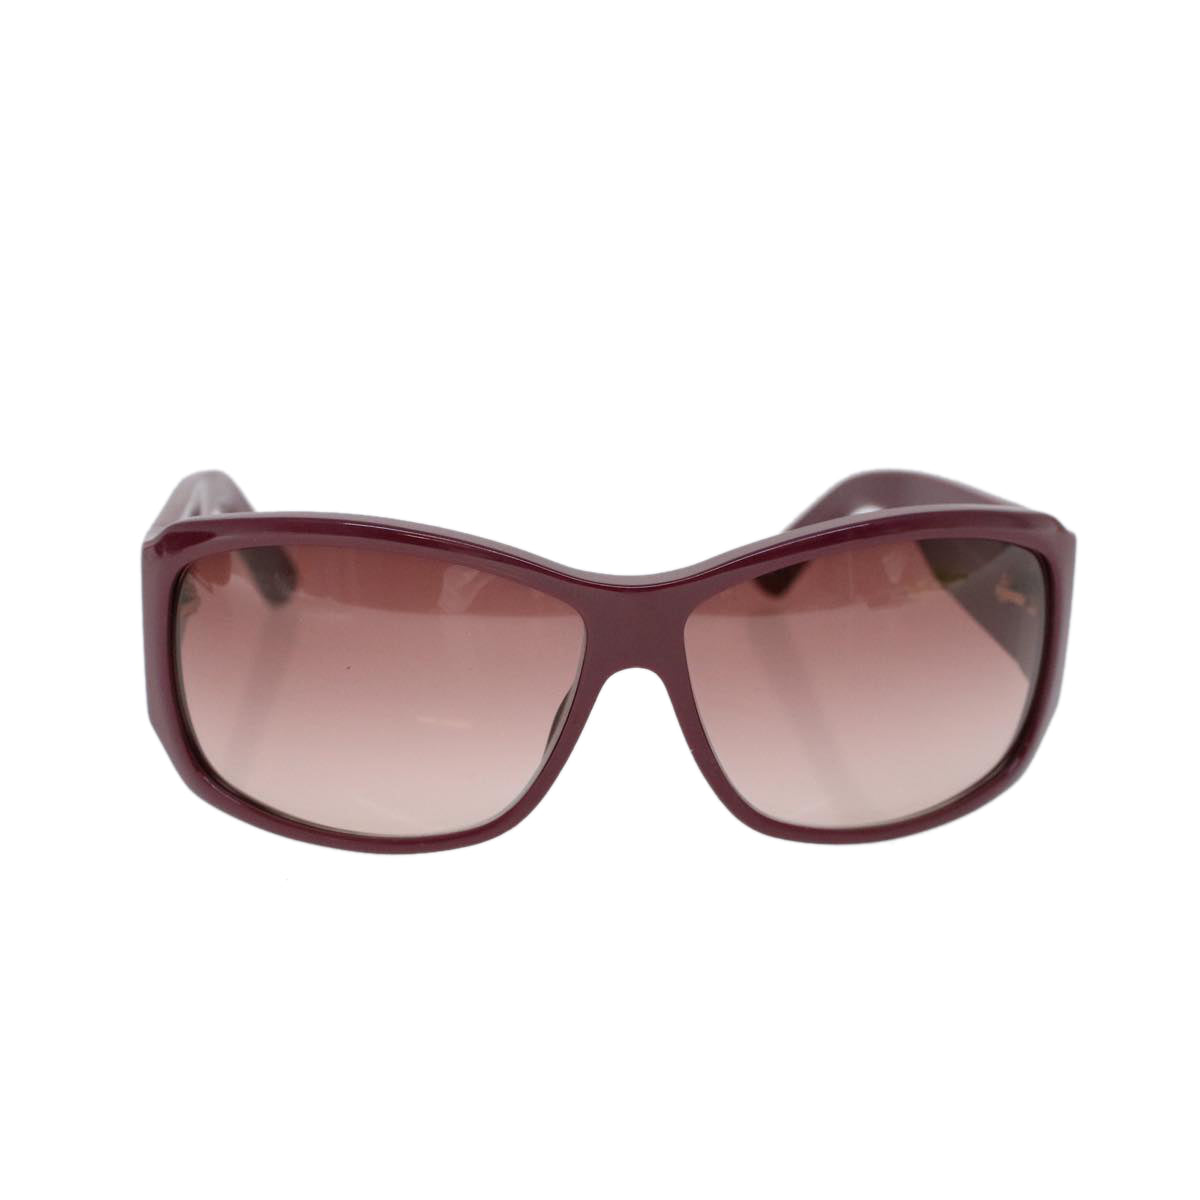 GUCCI Sunglasses Plastic Purple Auth cl742